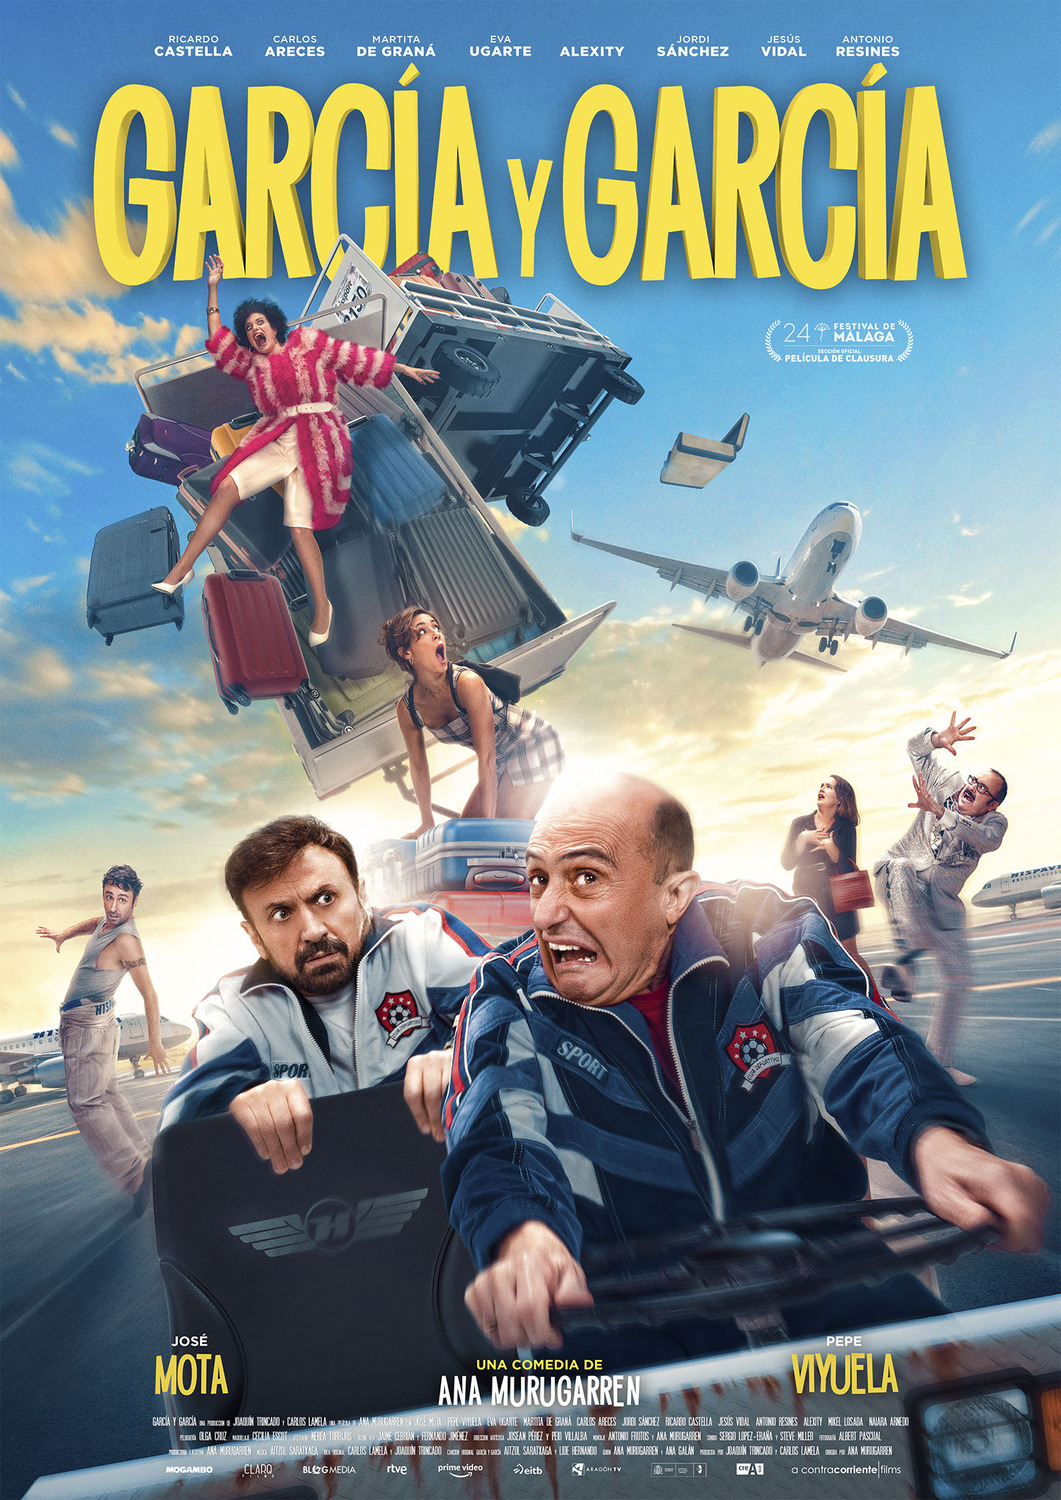 Extra Large Movie Poster Image for García y García 